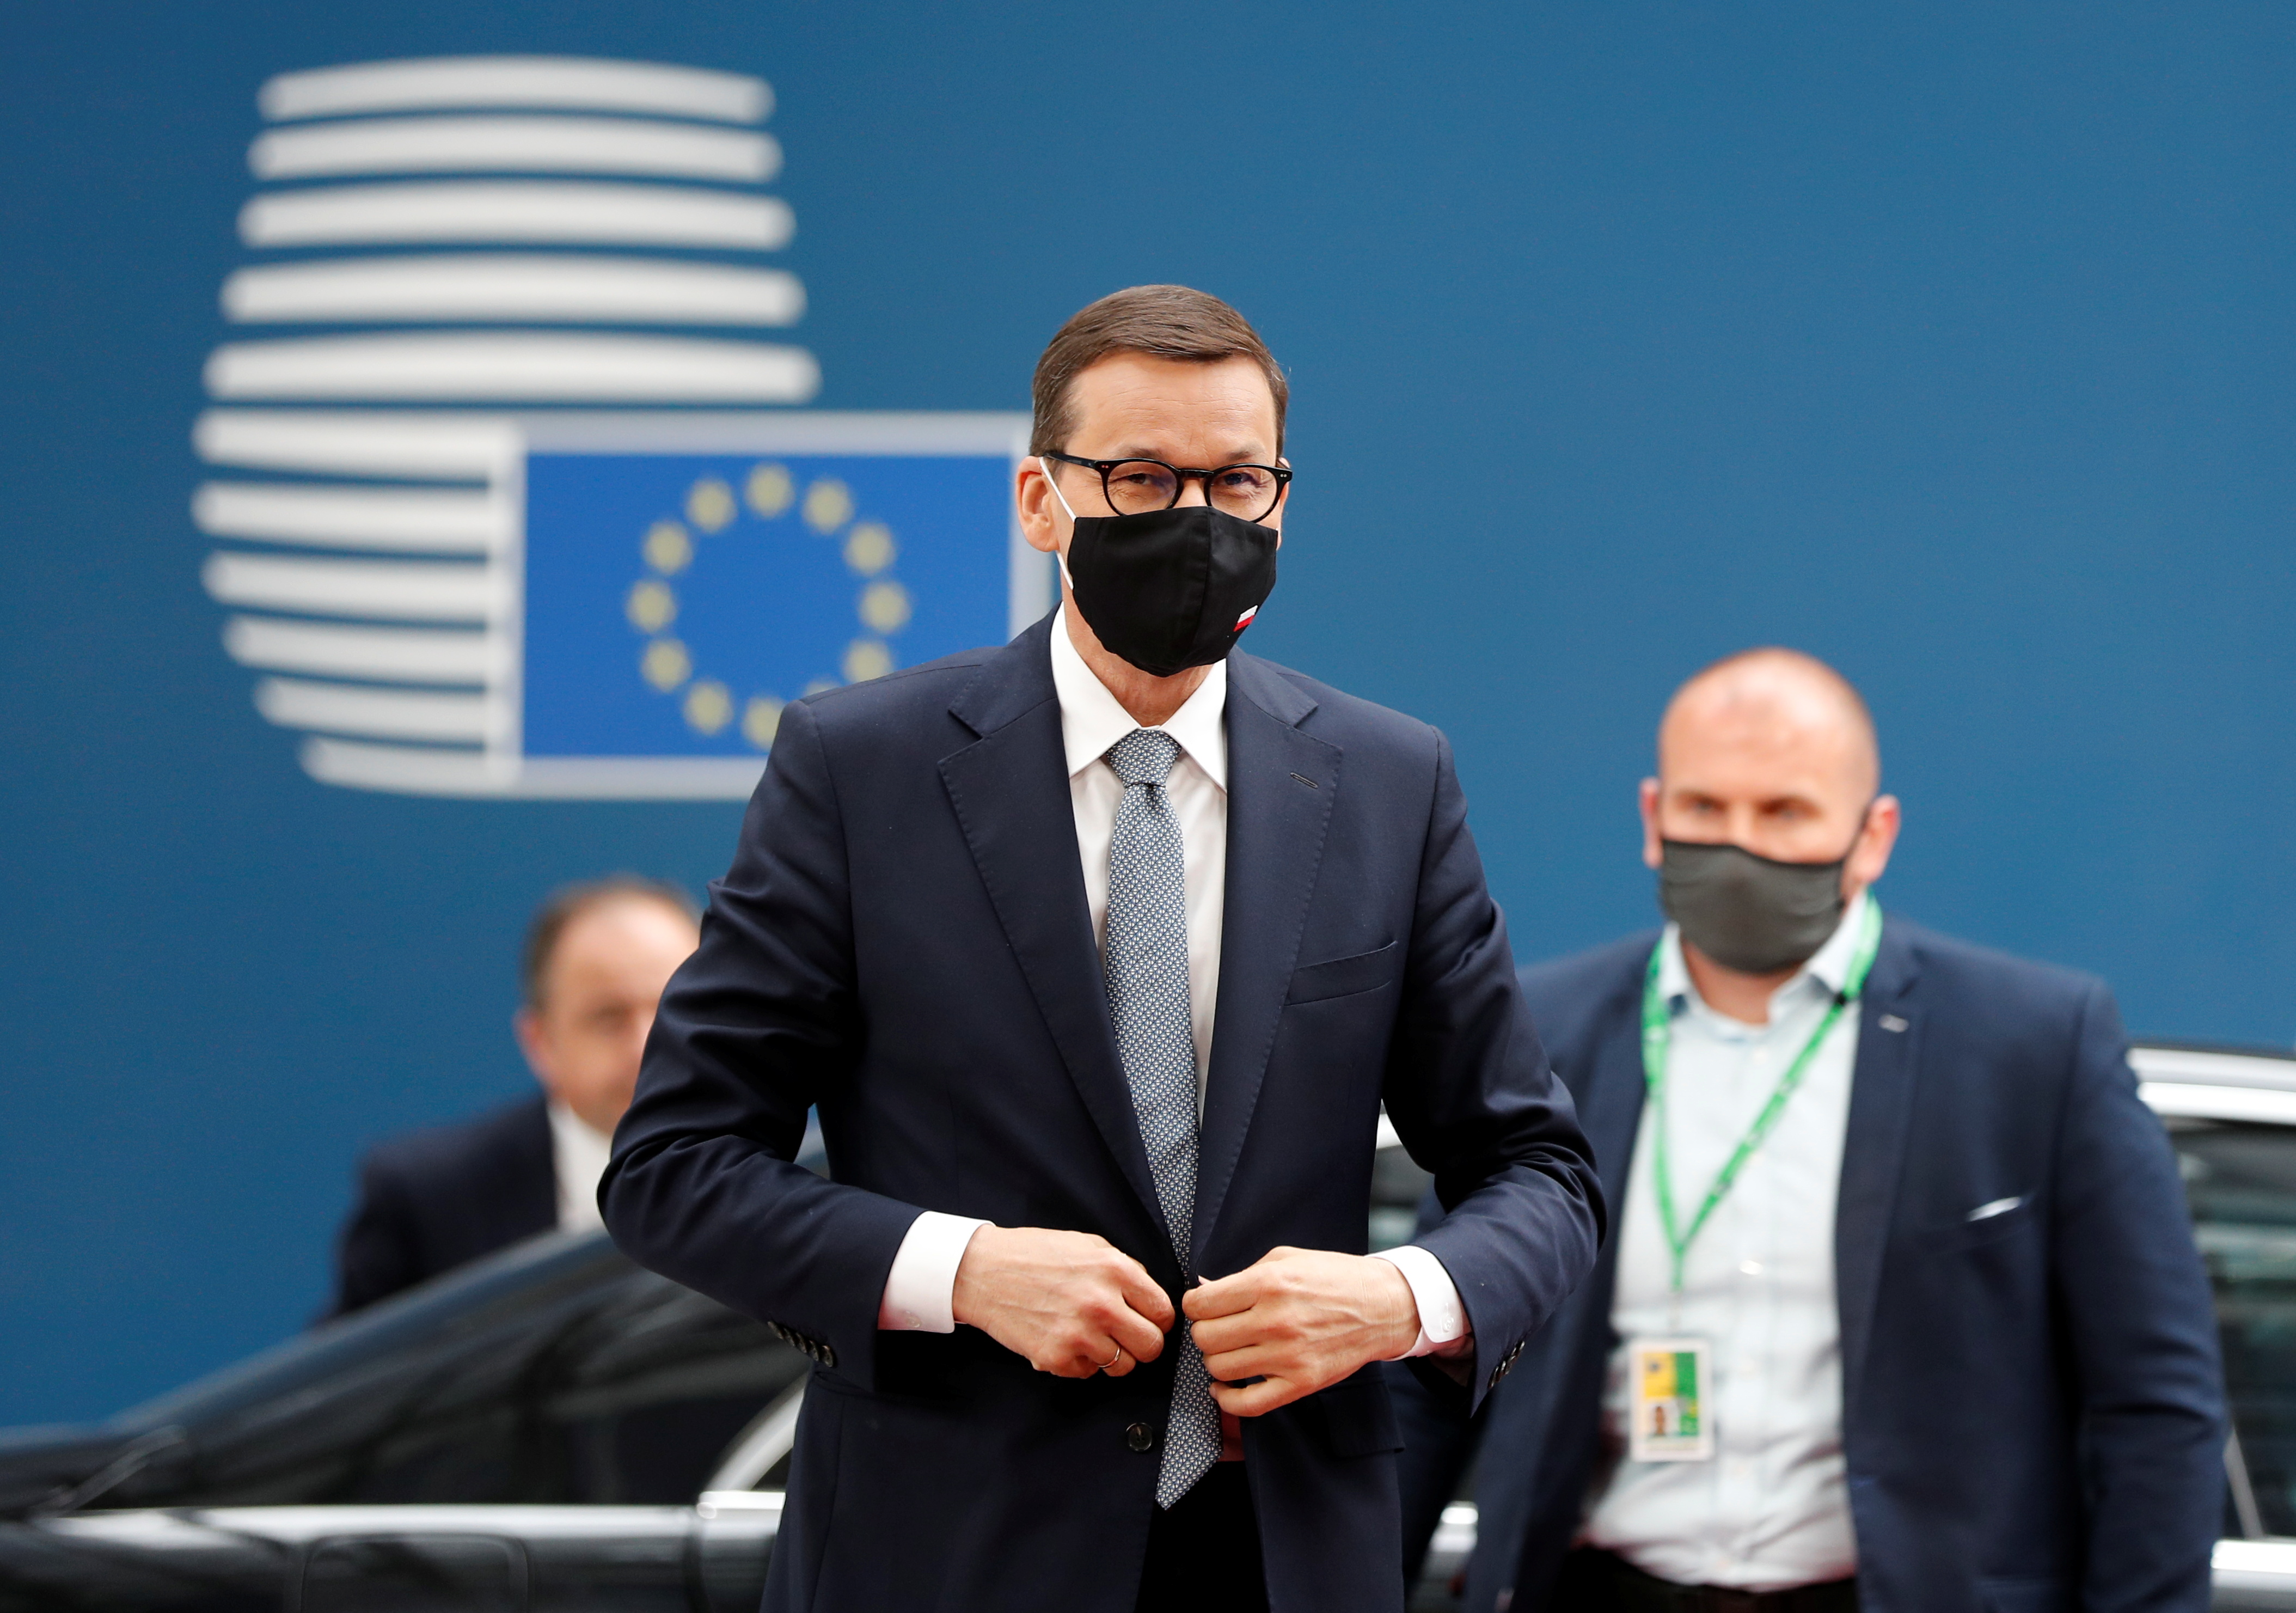 European Union leaders meeting in Brussels